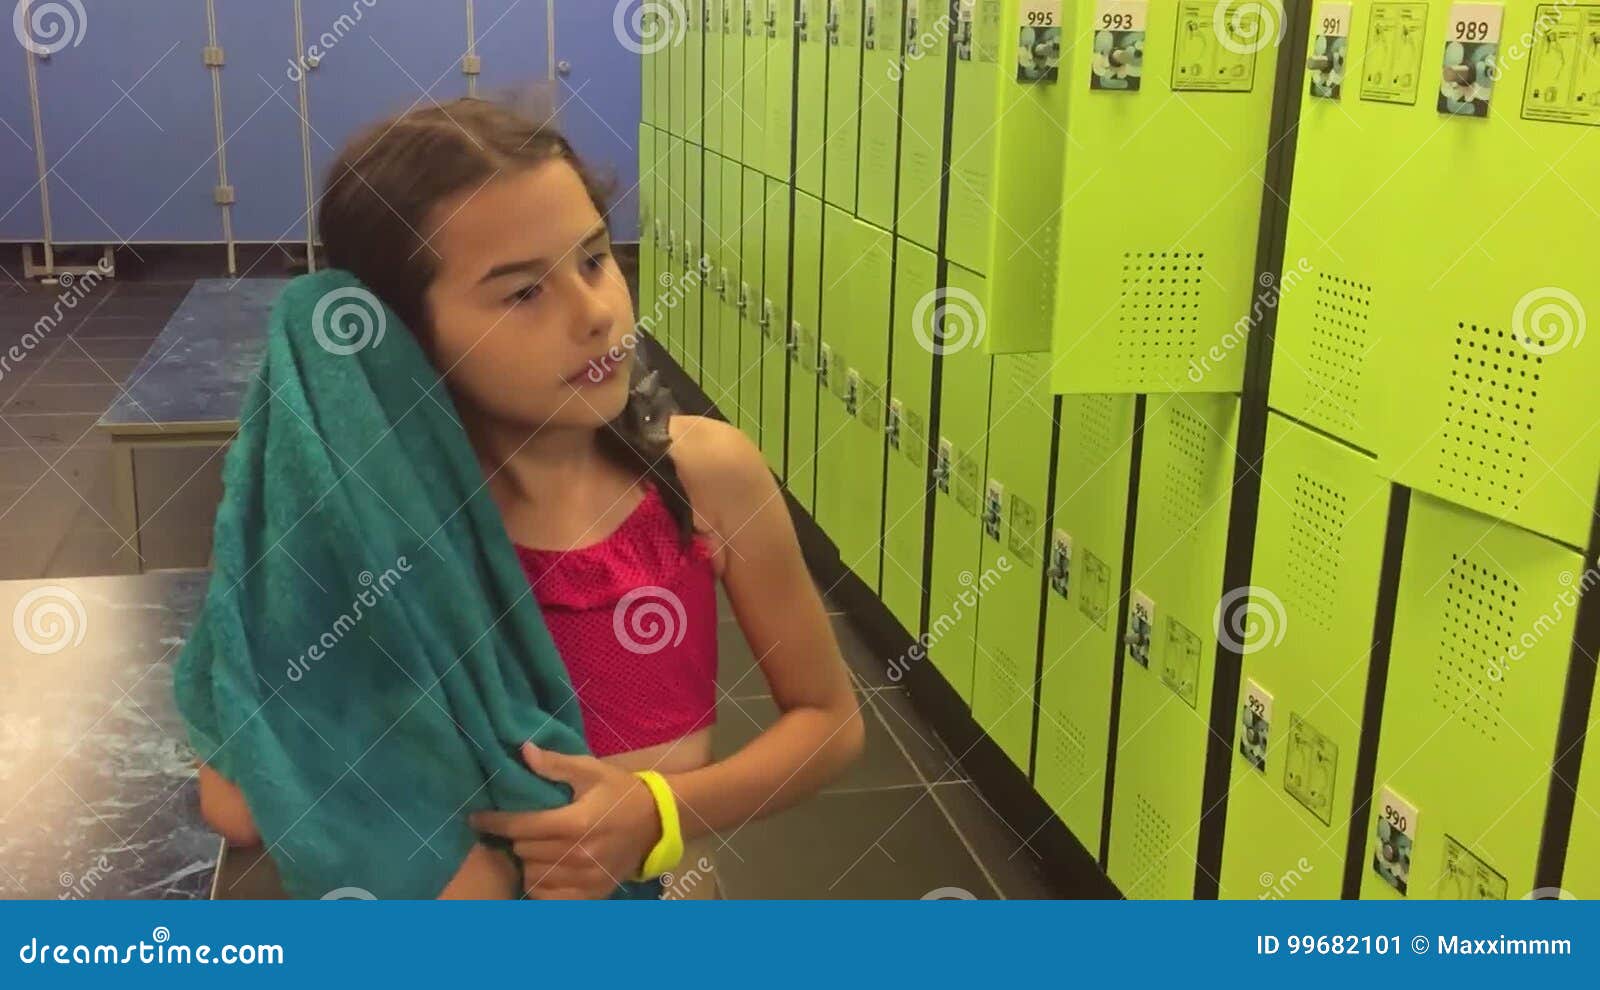 Best of Girl locker room videos